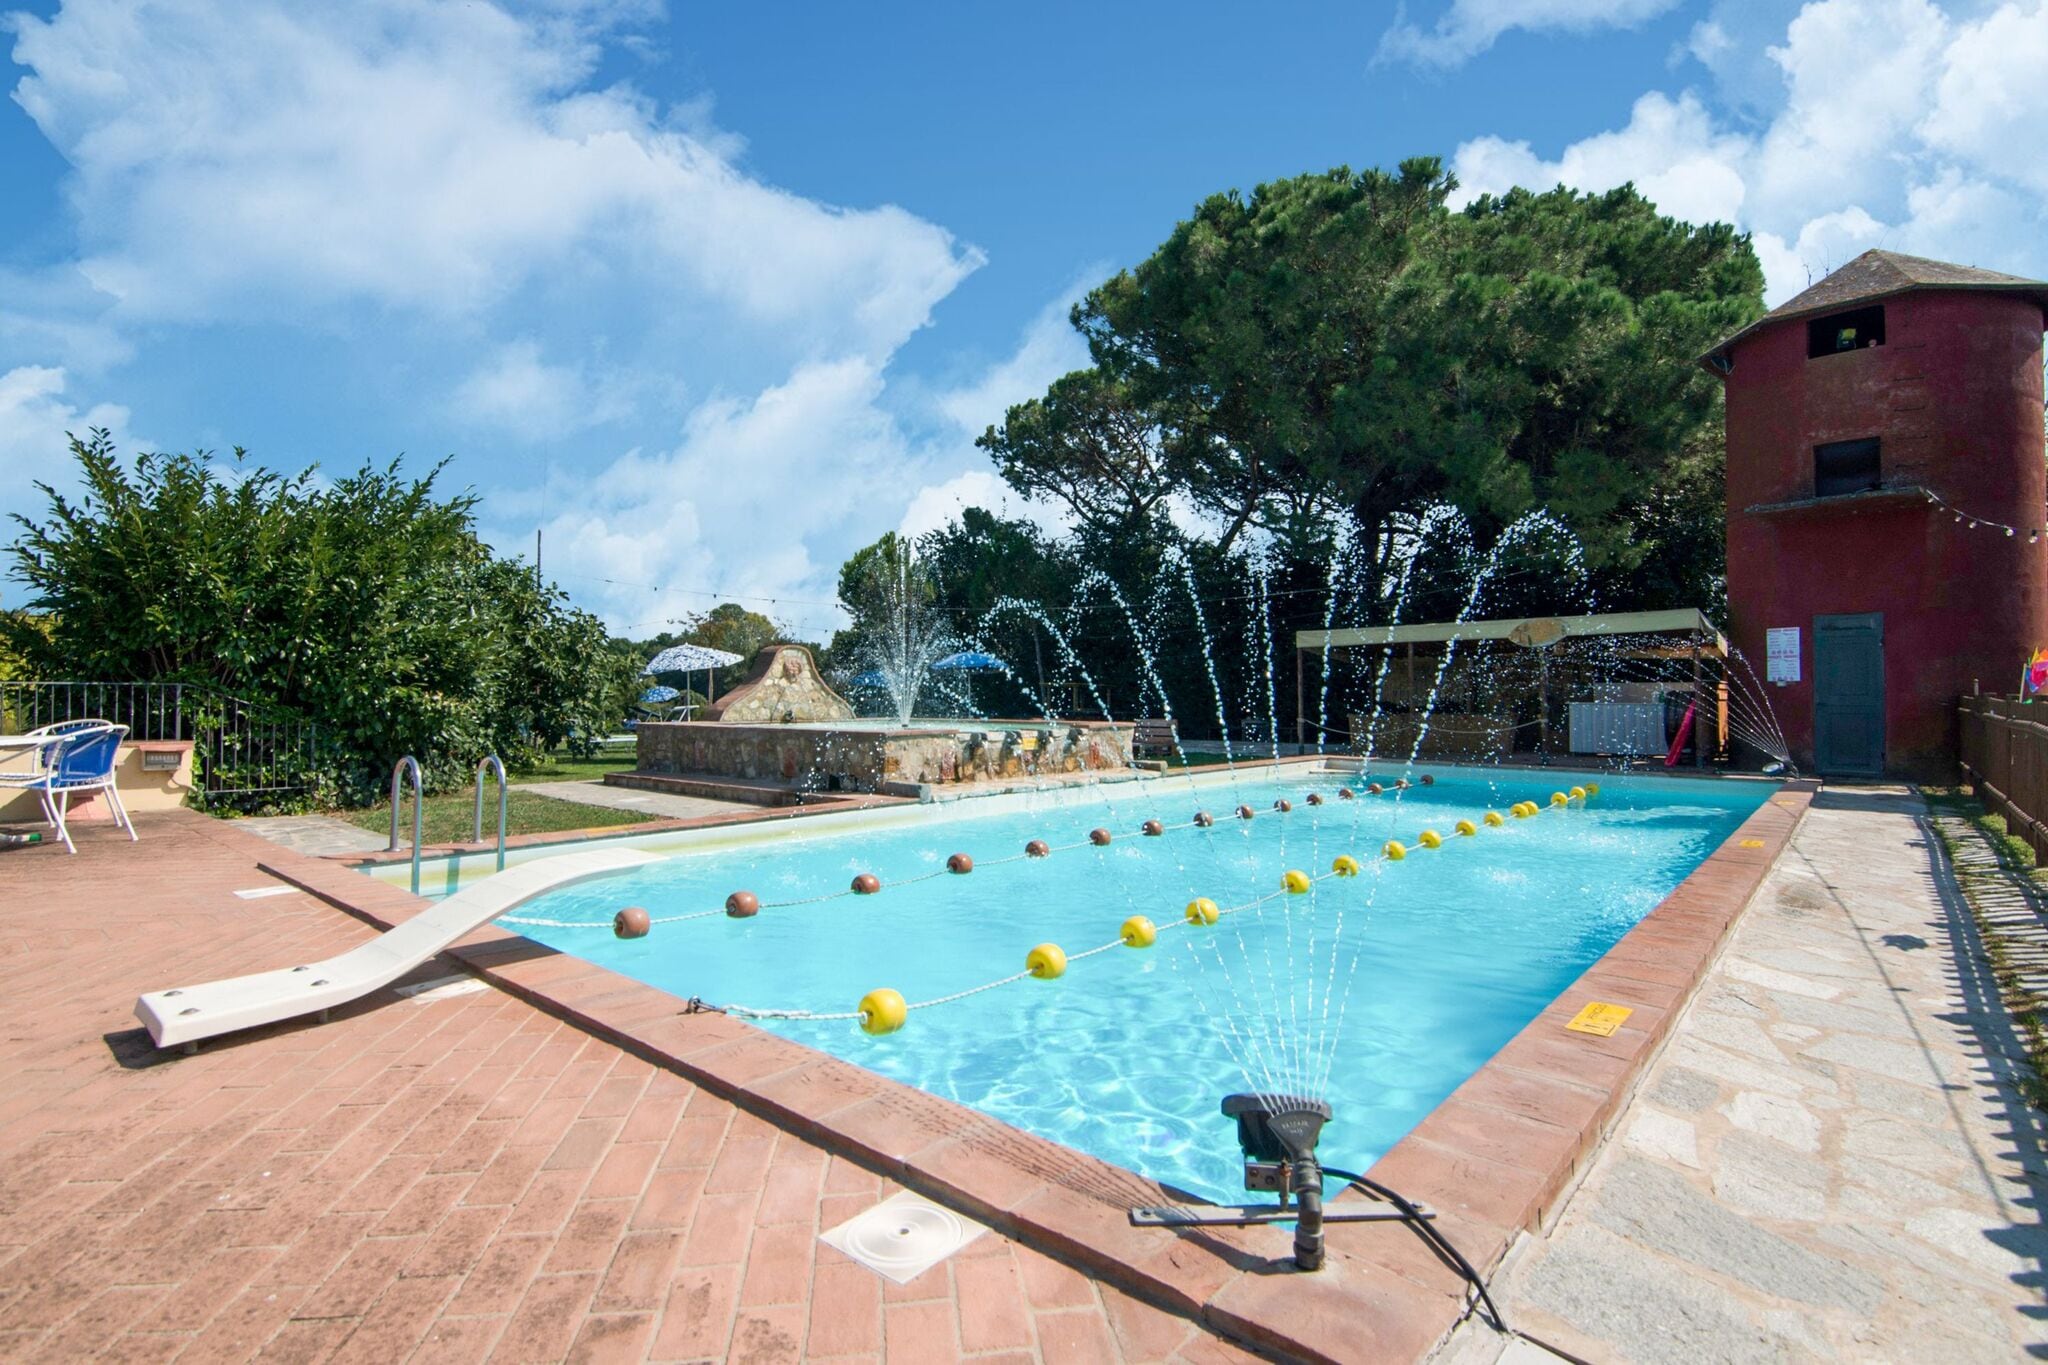 Ferienhaus in der Nähe des Sees Trasimeno, zwei Schwimmbaden und Wellnessbereich